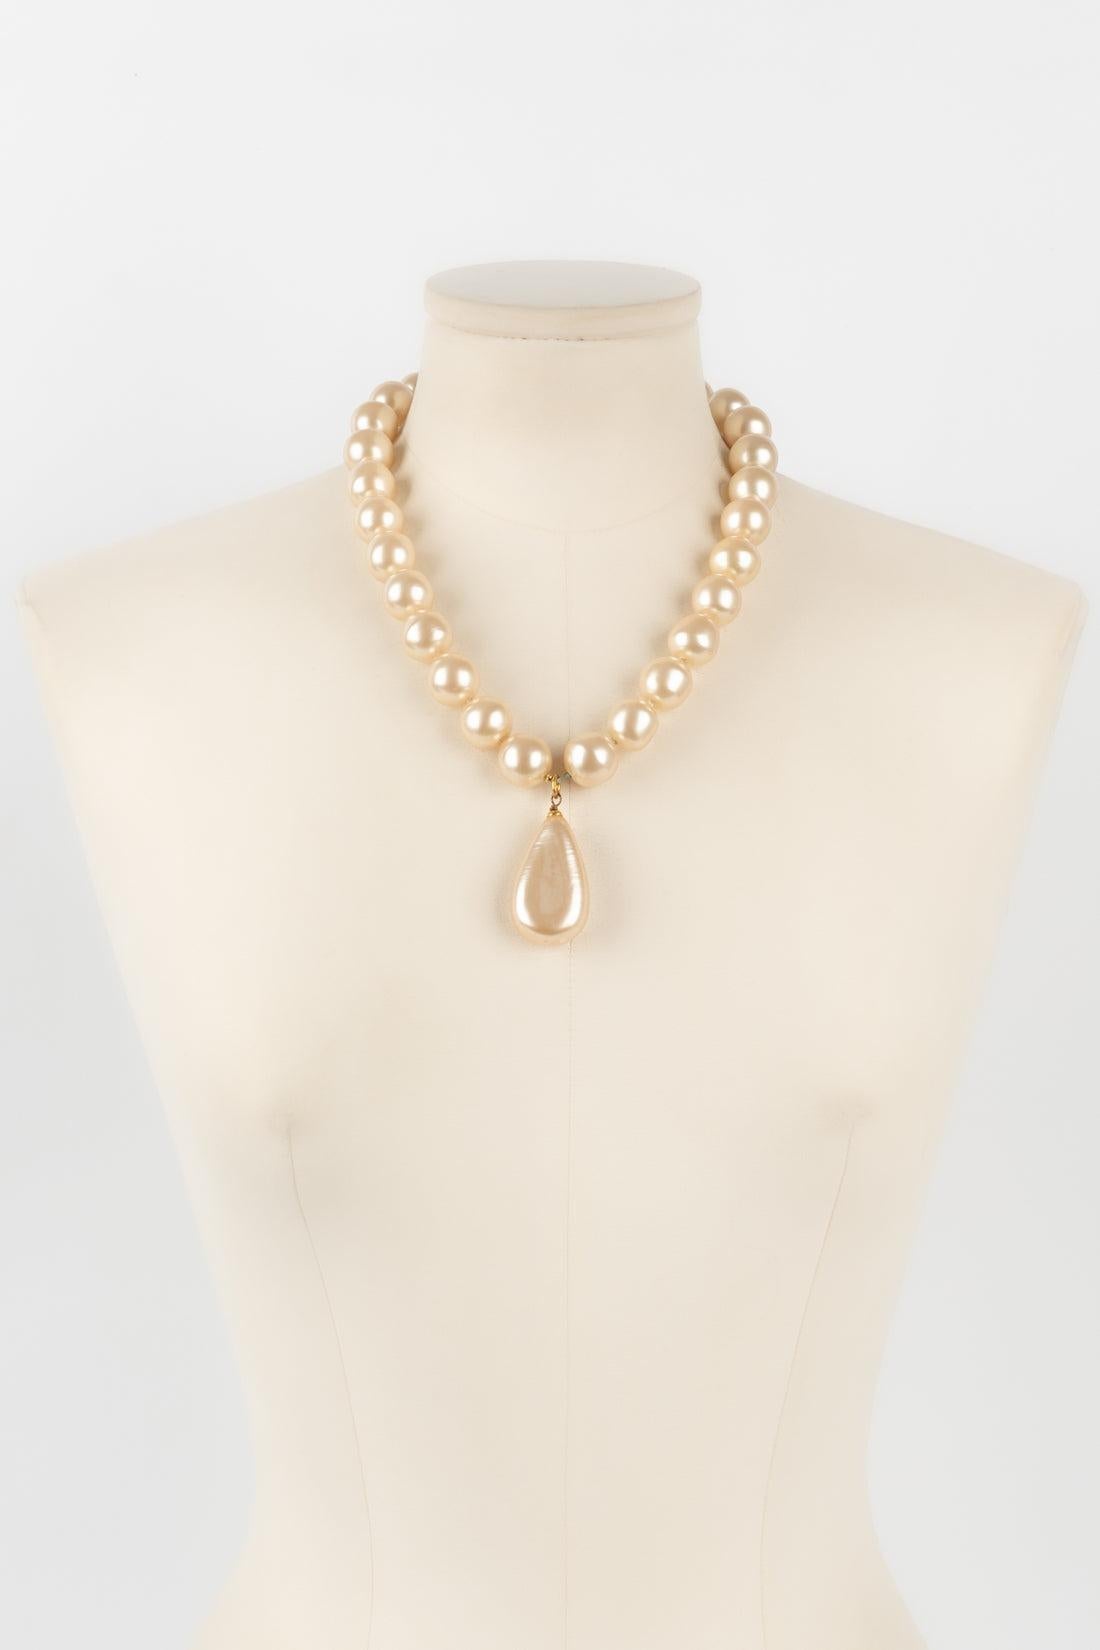 Chanel - (Made in France) Halskette mit goldenem Metallverschluss und geknoteten Perlen.

Zusätzliche Informationen:
Zustand: Sehr guter Zustand
Abmessungen: Länge: 50 cm

Sellers Referenz: CB203
